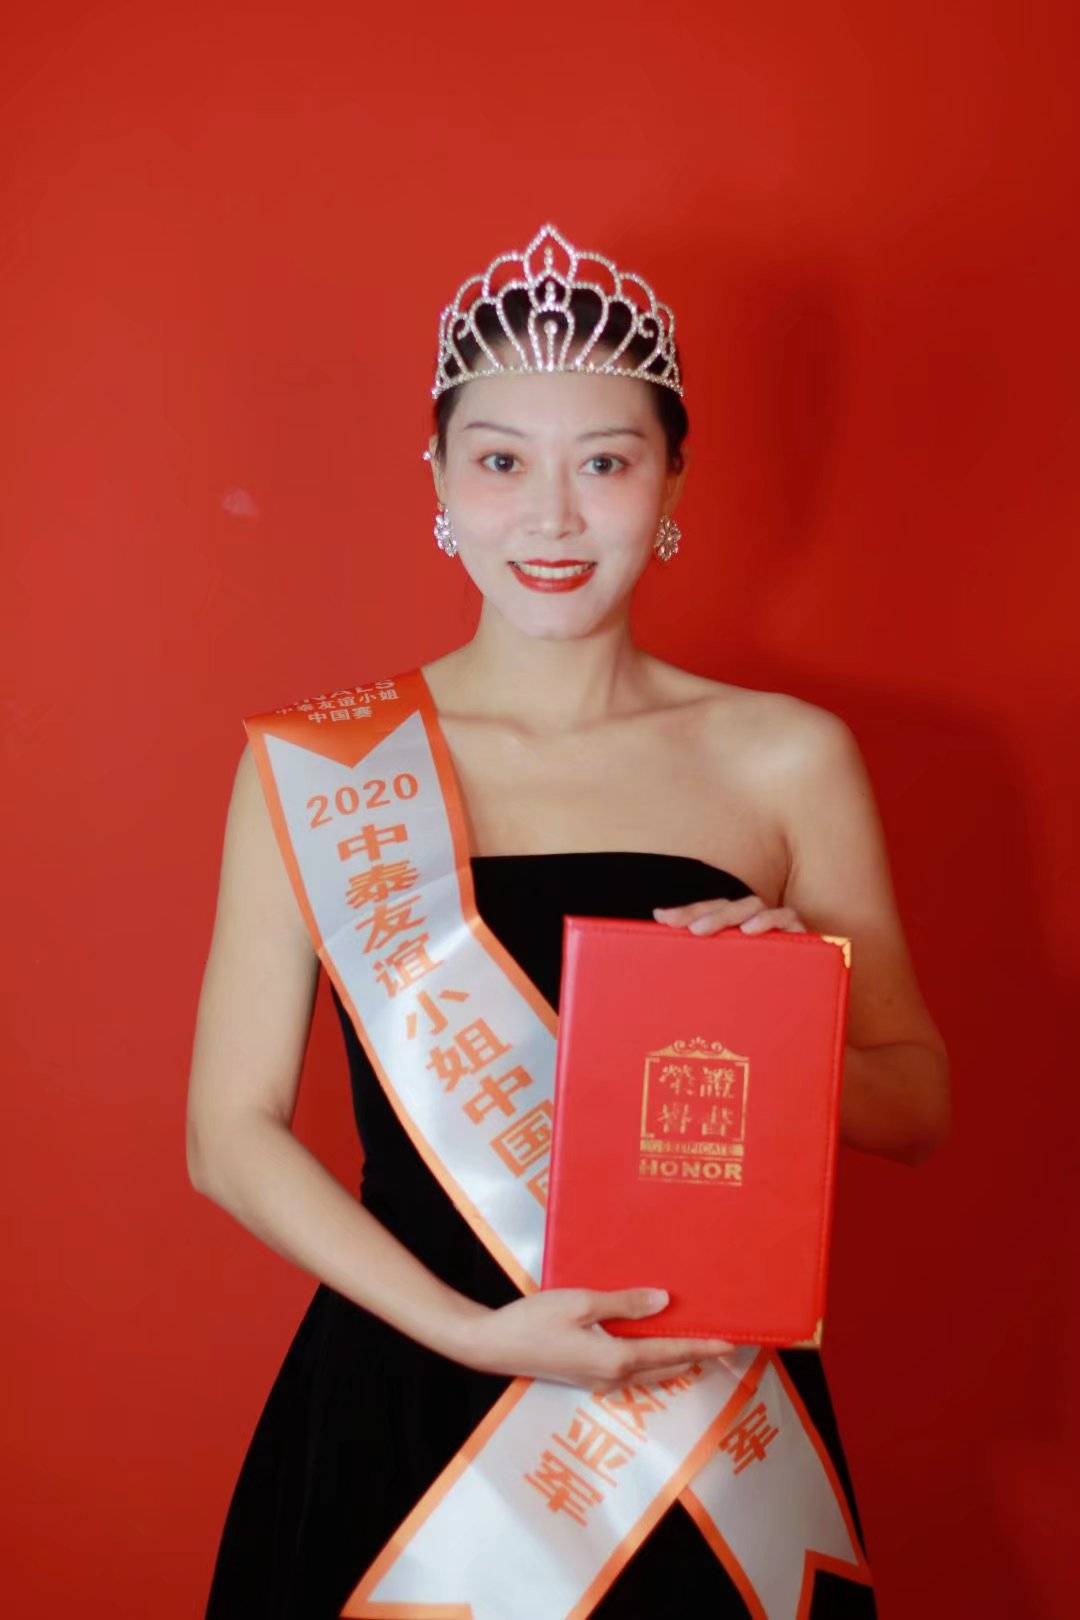 珠海麦潮潮流模特大赛:冠军2014中国生态旅游小姐全国总决赛:季军2020